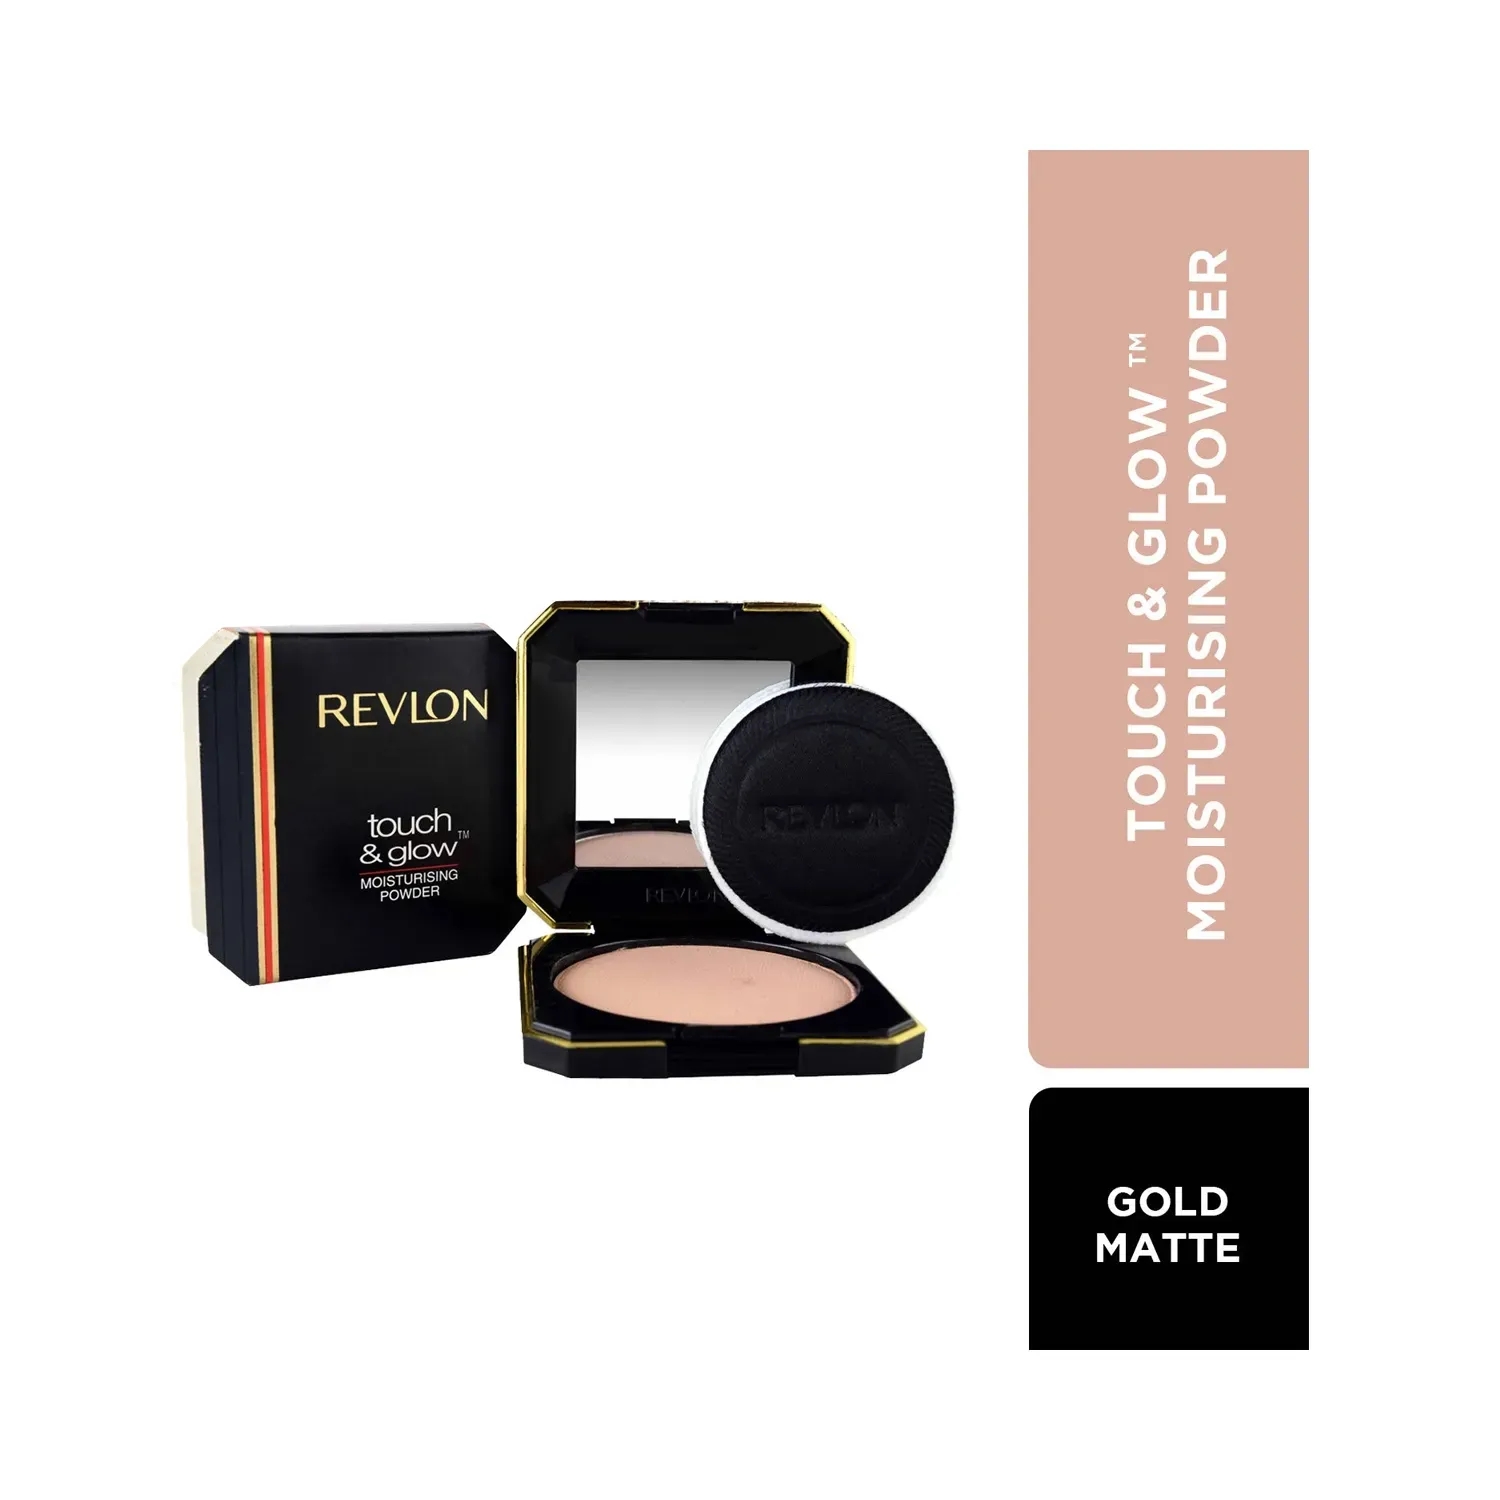 Revlon | Revlon Touch & Glow Powder - Gold Matte (12g)